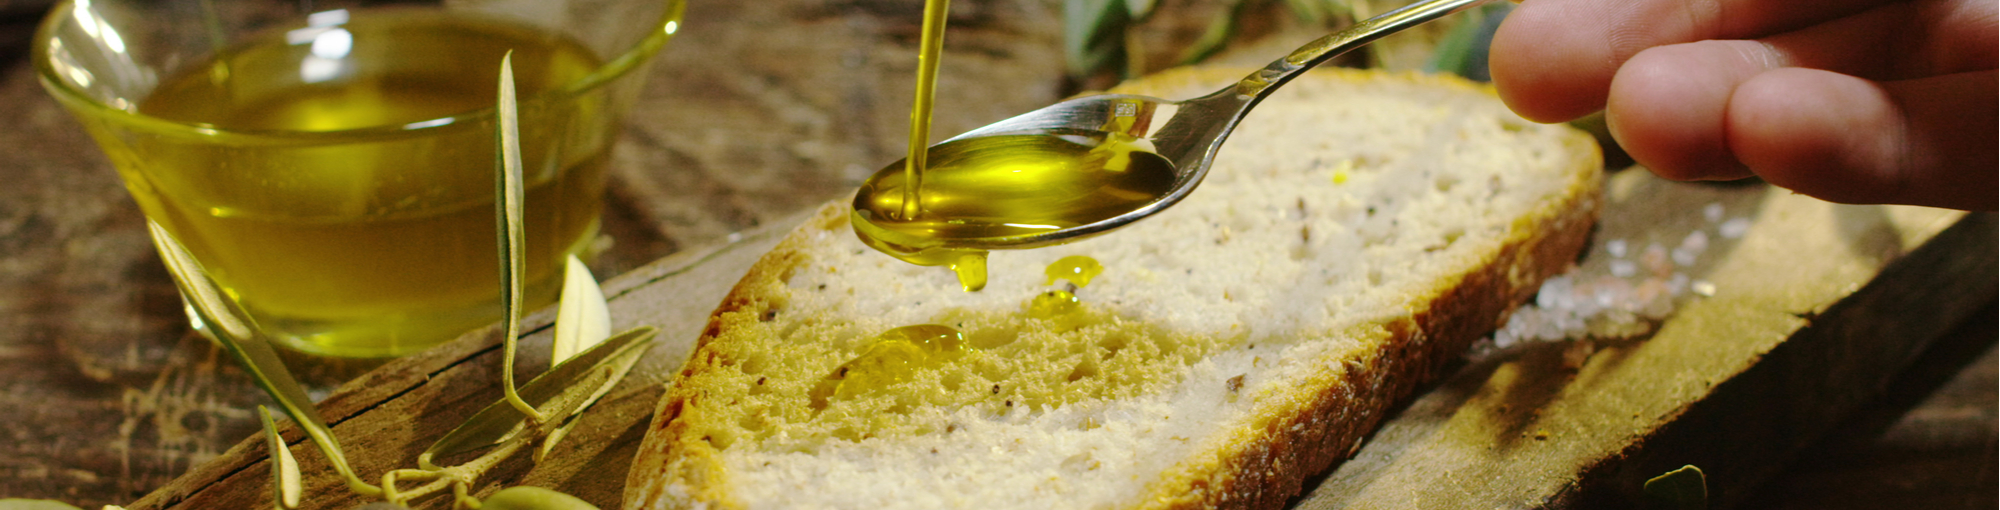 Denuncian que los supermercados siguen subiendo el precio del aceite de oliva pese a pagar menos en origen. Pexels